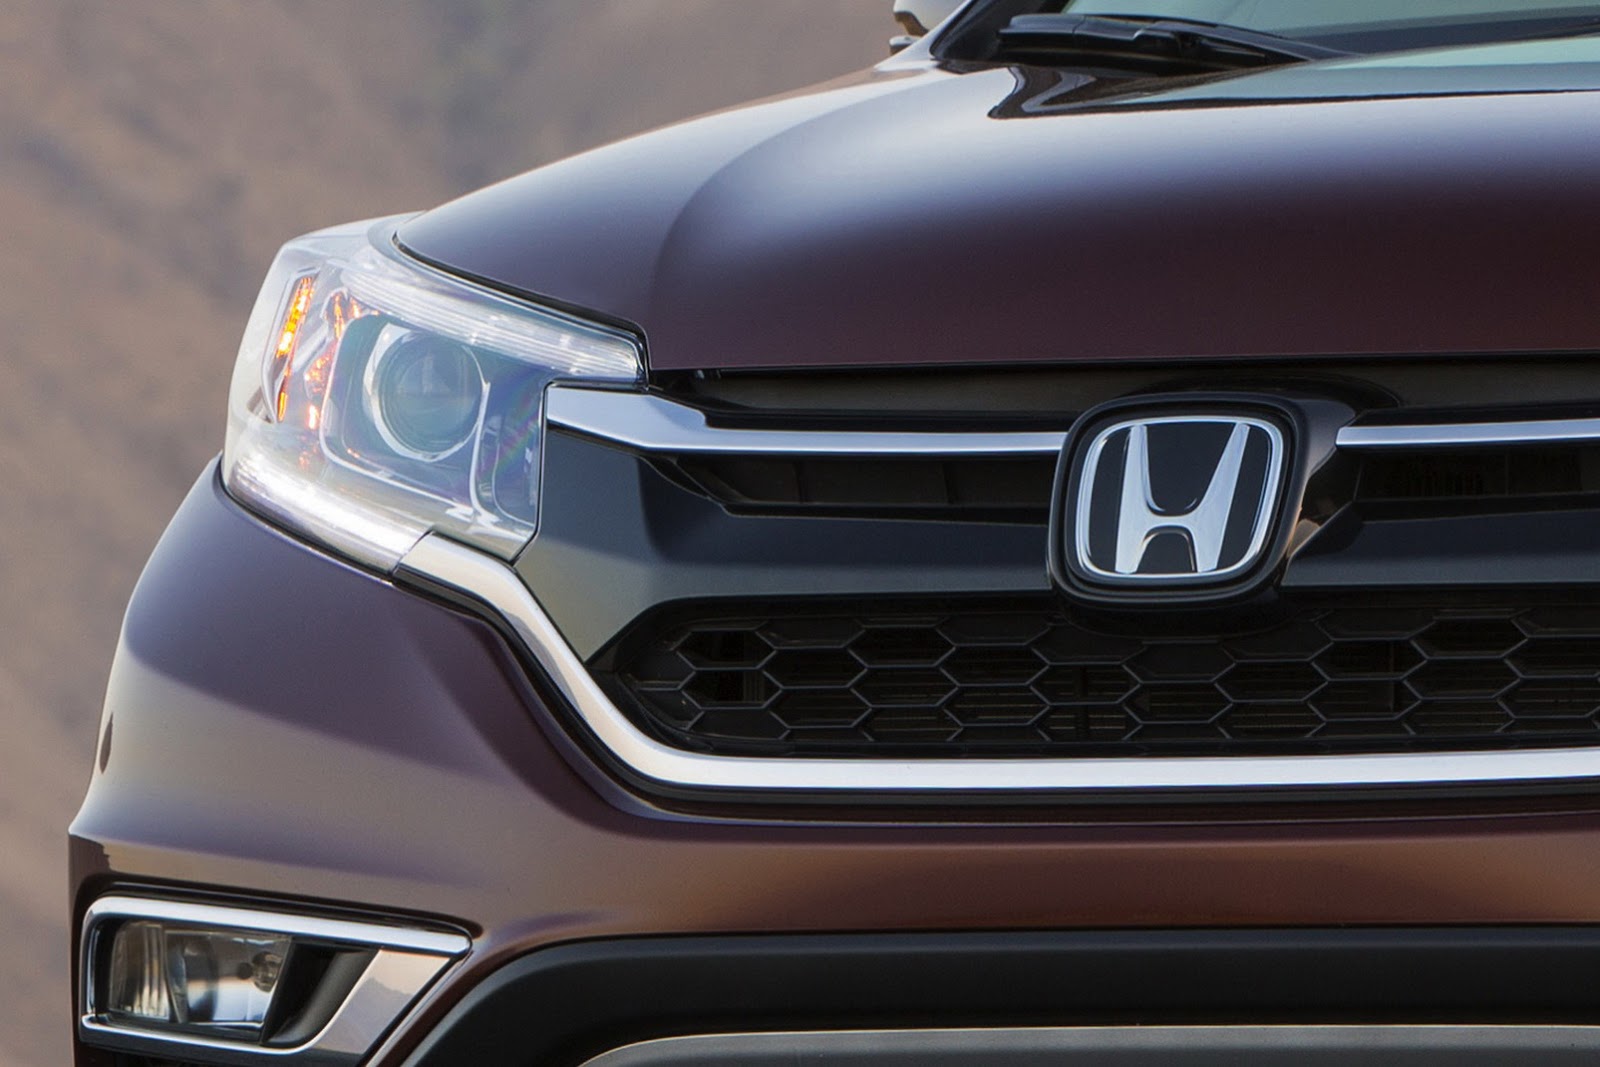 Honda, 2015 Honda CR-V Facelift Indonesia: Ini Dia Wajah Honda CR-V Facelift 2015 Beserta Fitur Baru Untuk Pasar Indonesia